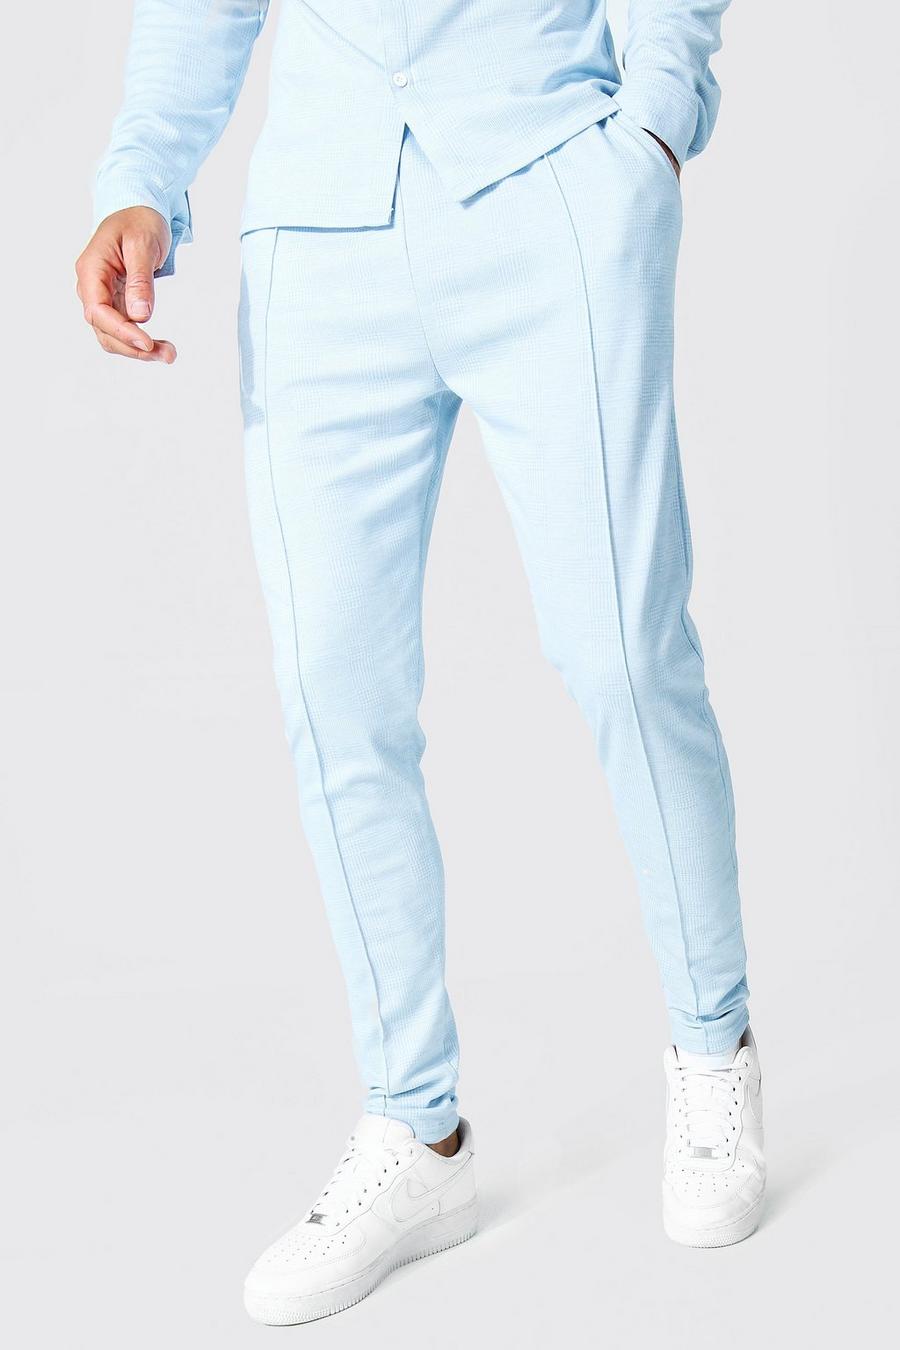 כחול בהיר מכנסי סקיני ג'קארד עם הדפס משבצות וקפל לגברים גבוהים image number 1